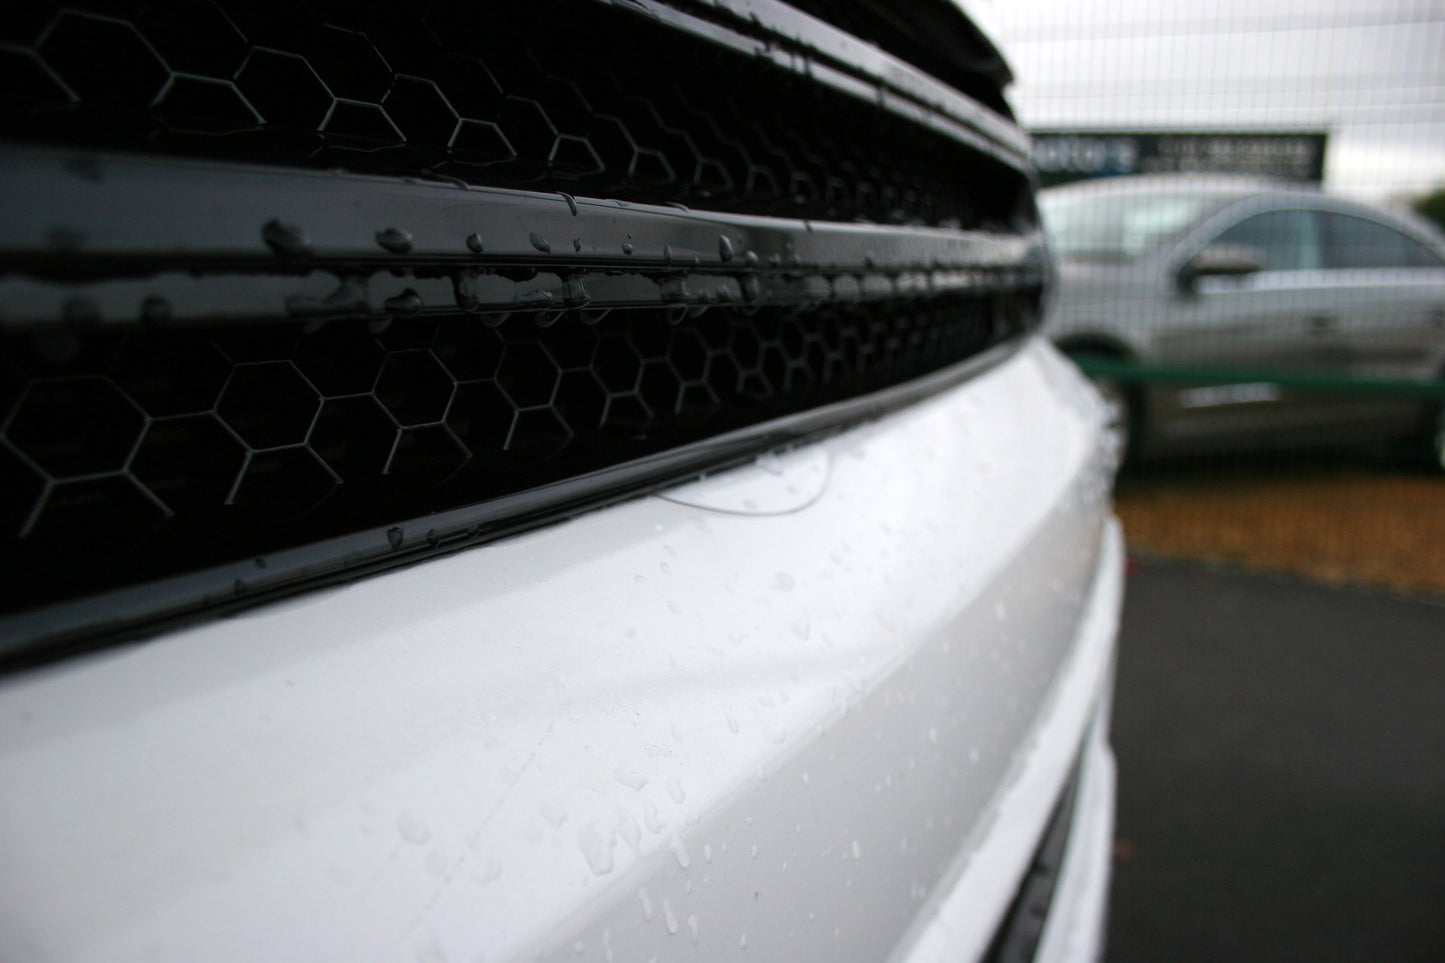 VW T5.1 Transporter Van Front Styling Package Gloss-Black (2pcs) air a pheantadh agus deiseil airson uidheamachadh